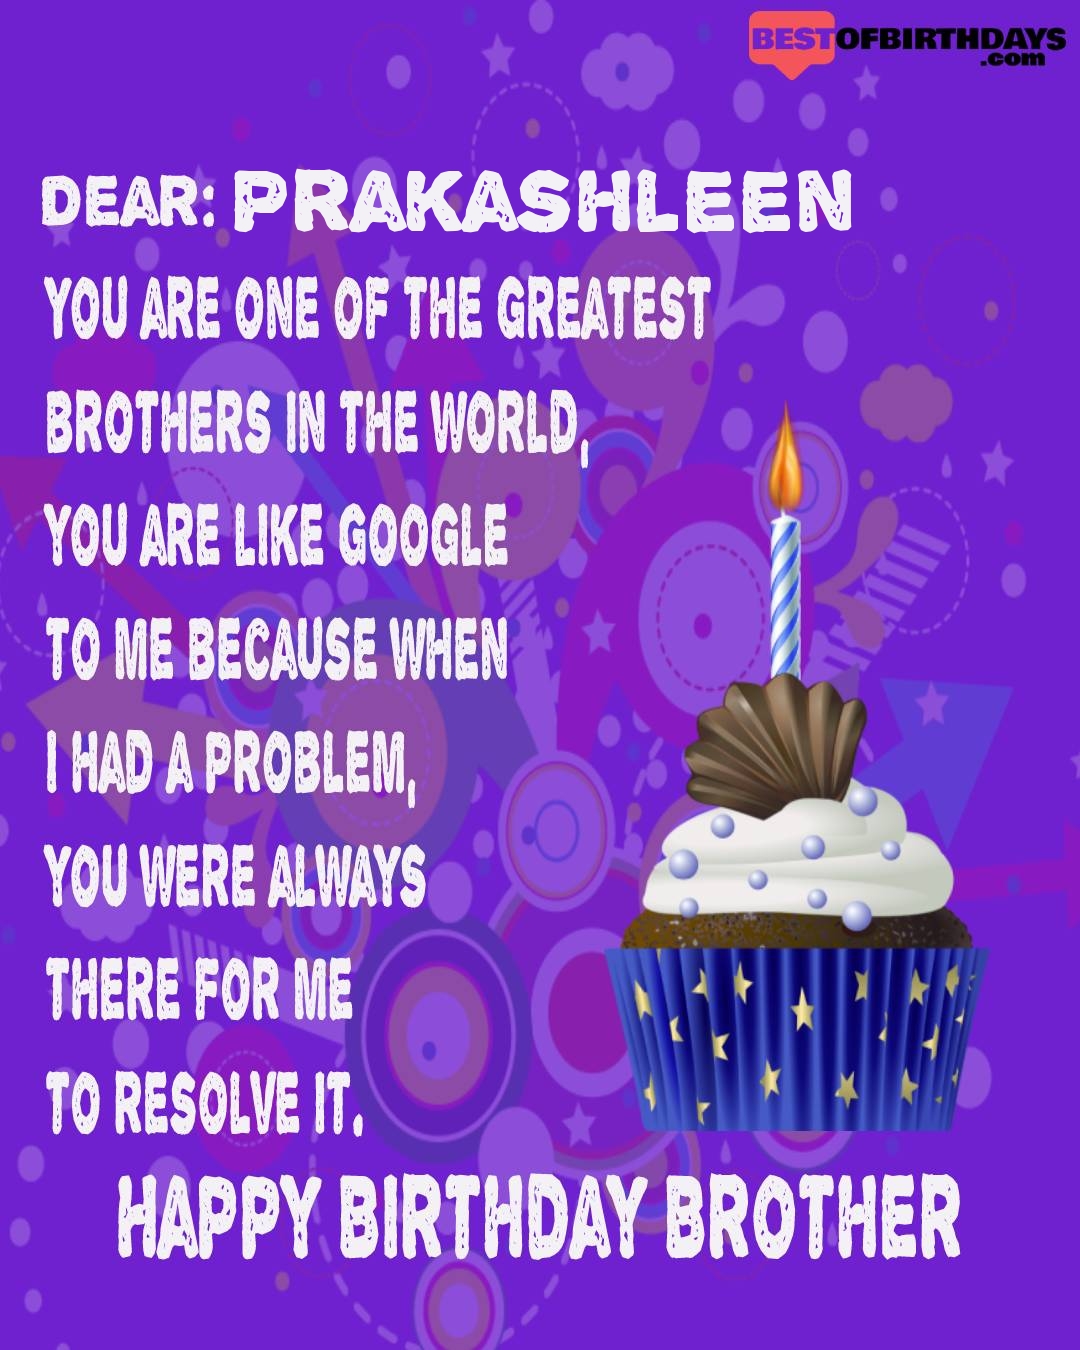 Happy birthday prakashleen bhai brother bro